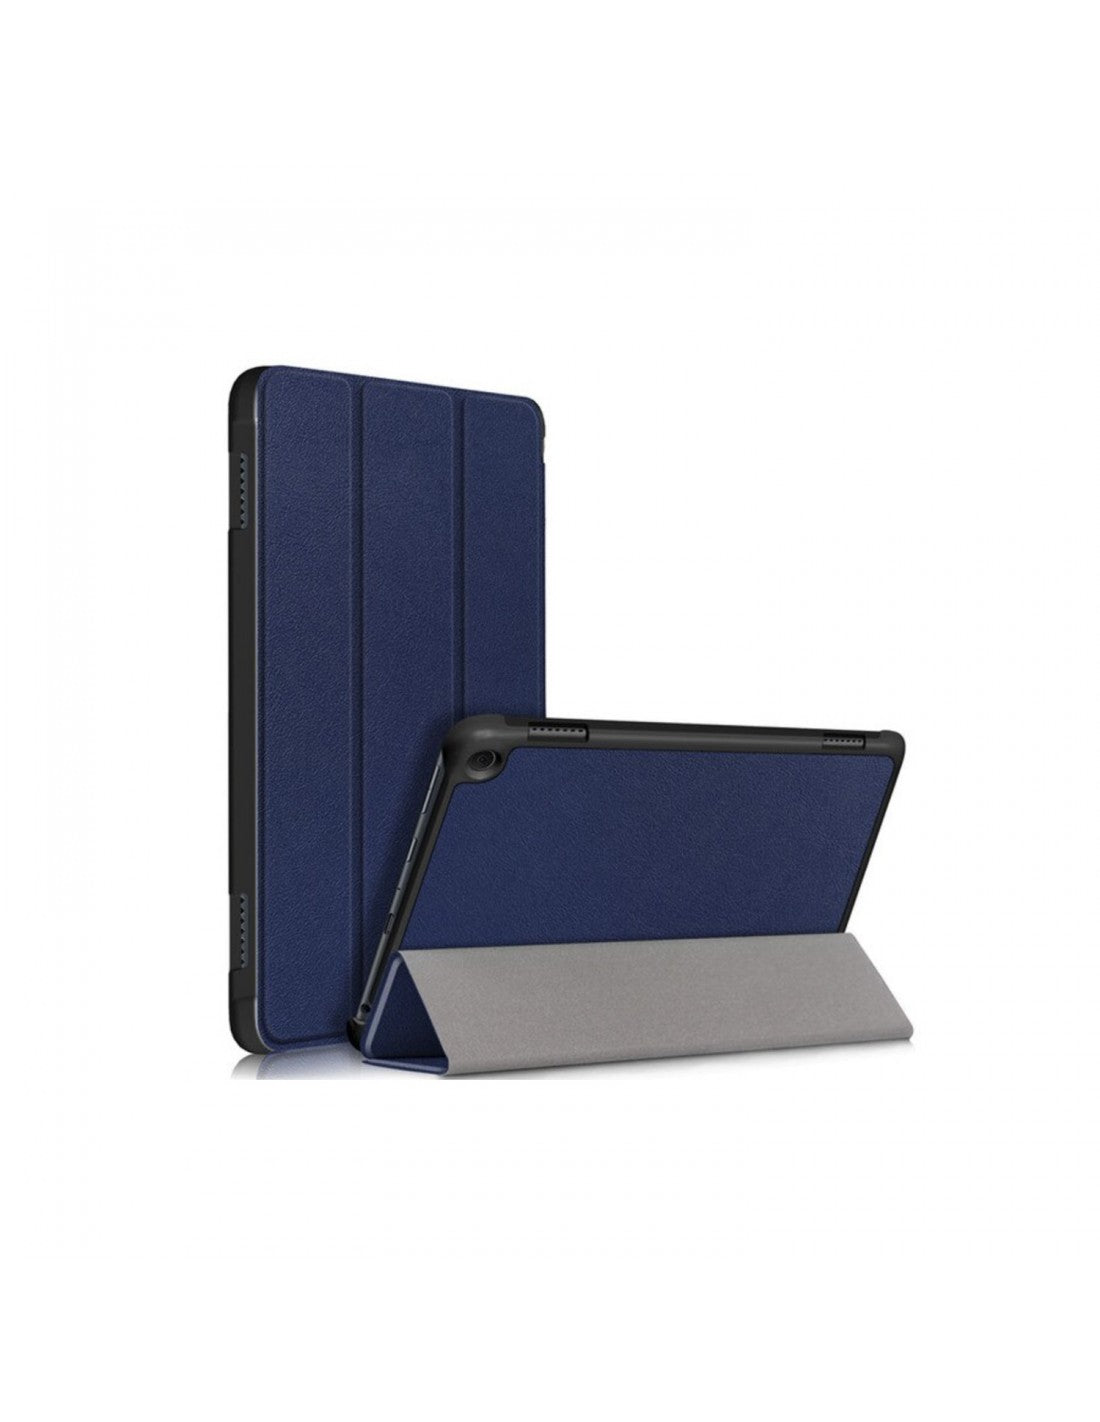 Funda de cuero con soporte para  Kindle Fire HD 7, color azul tinta  (Sólo sirve